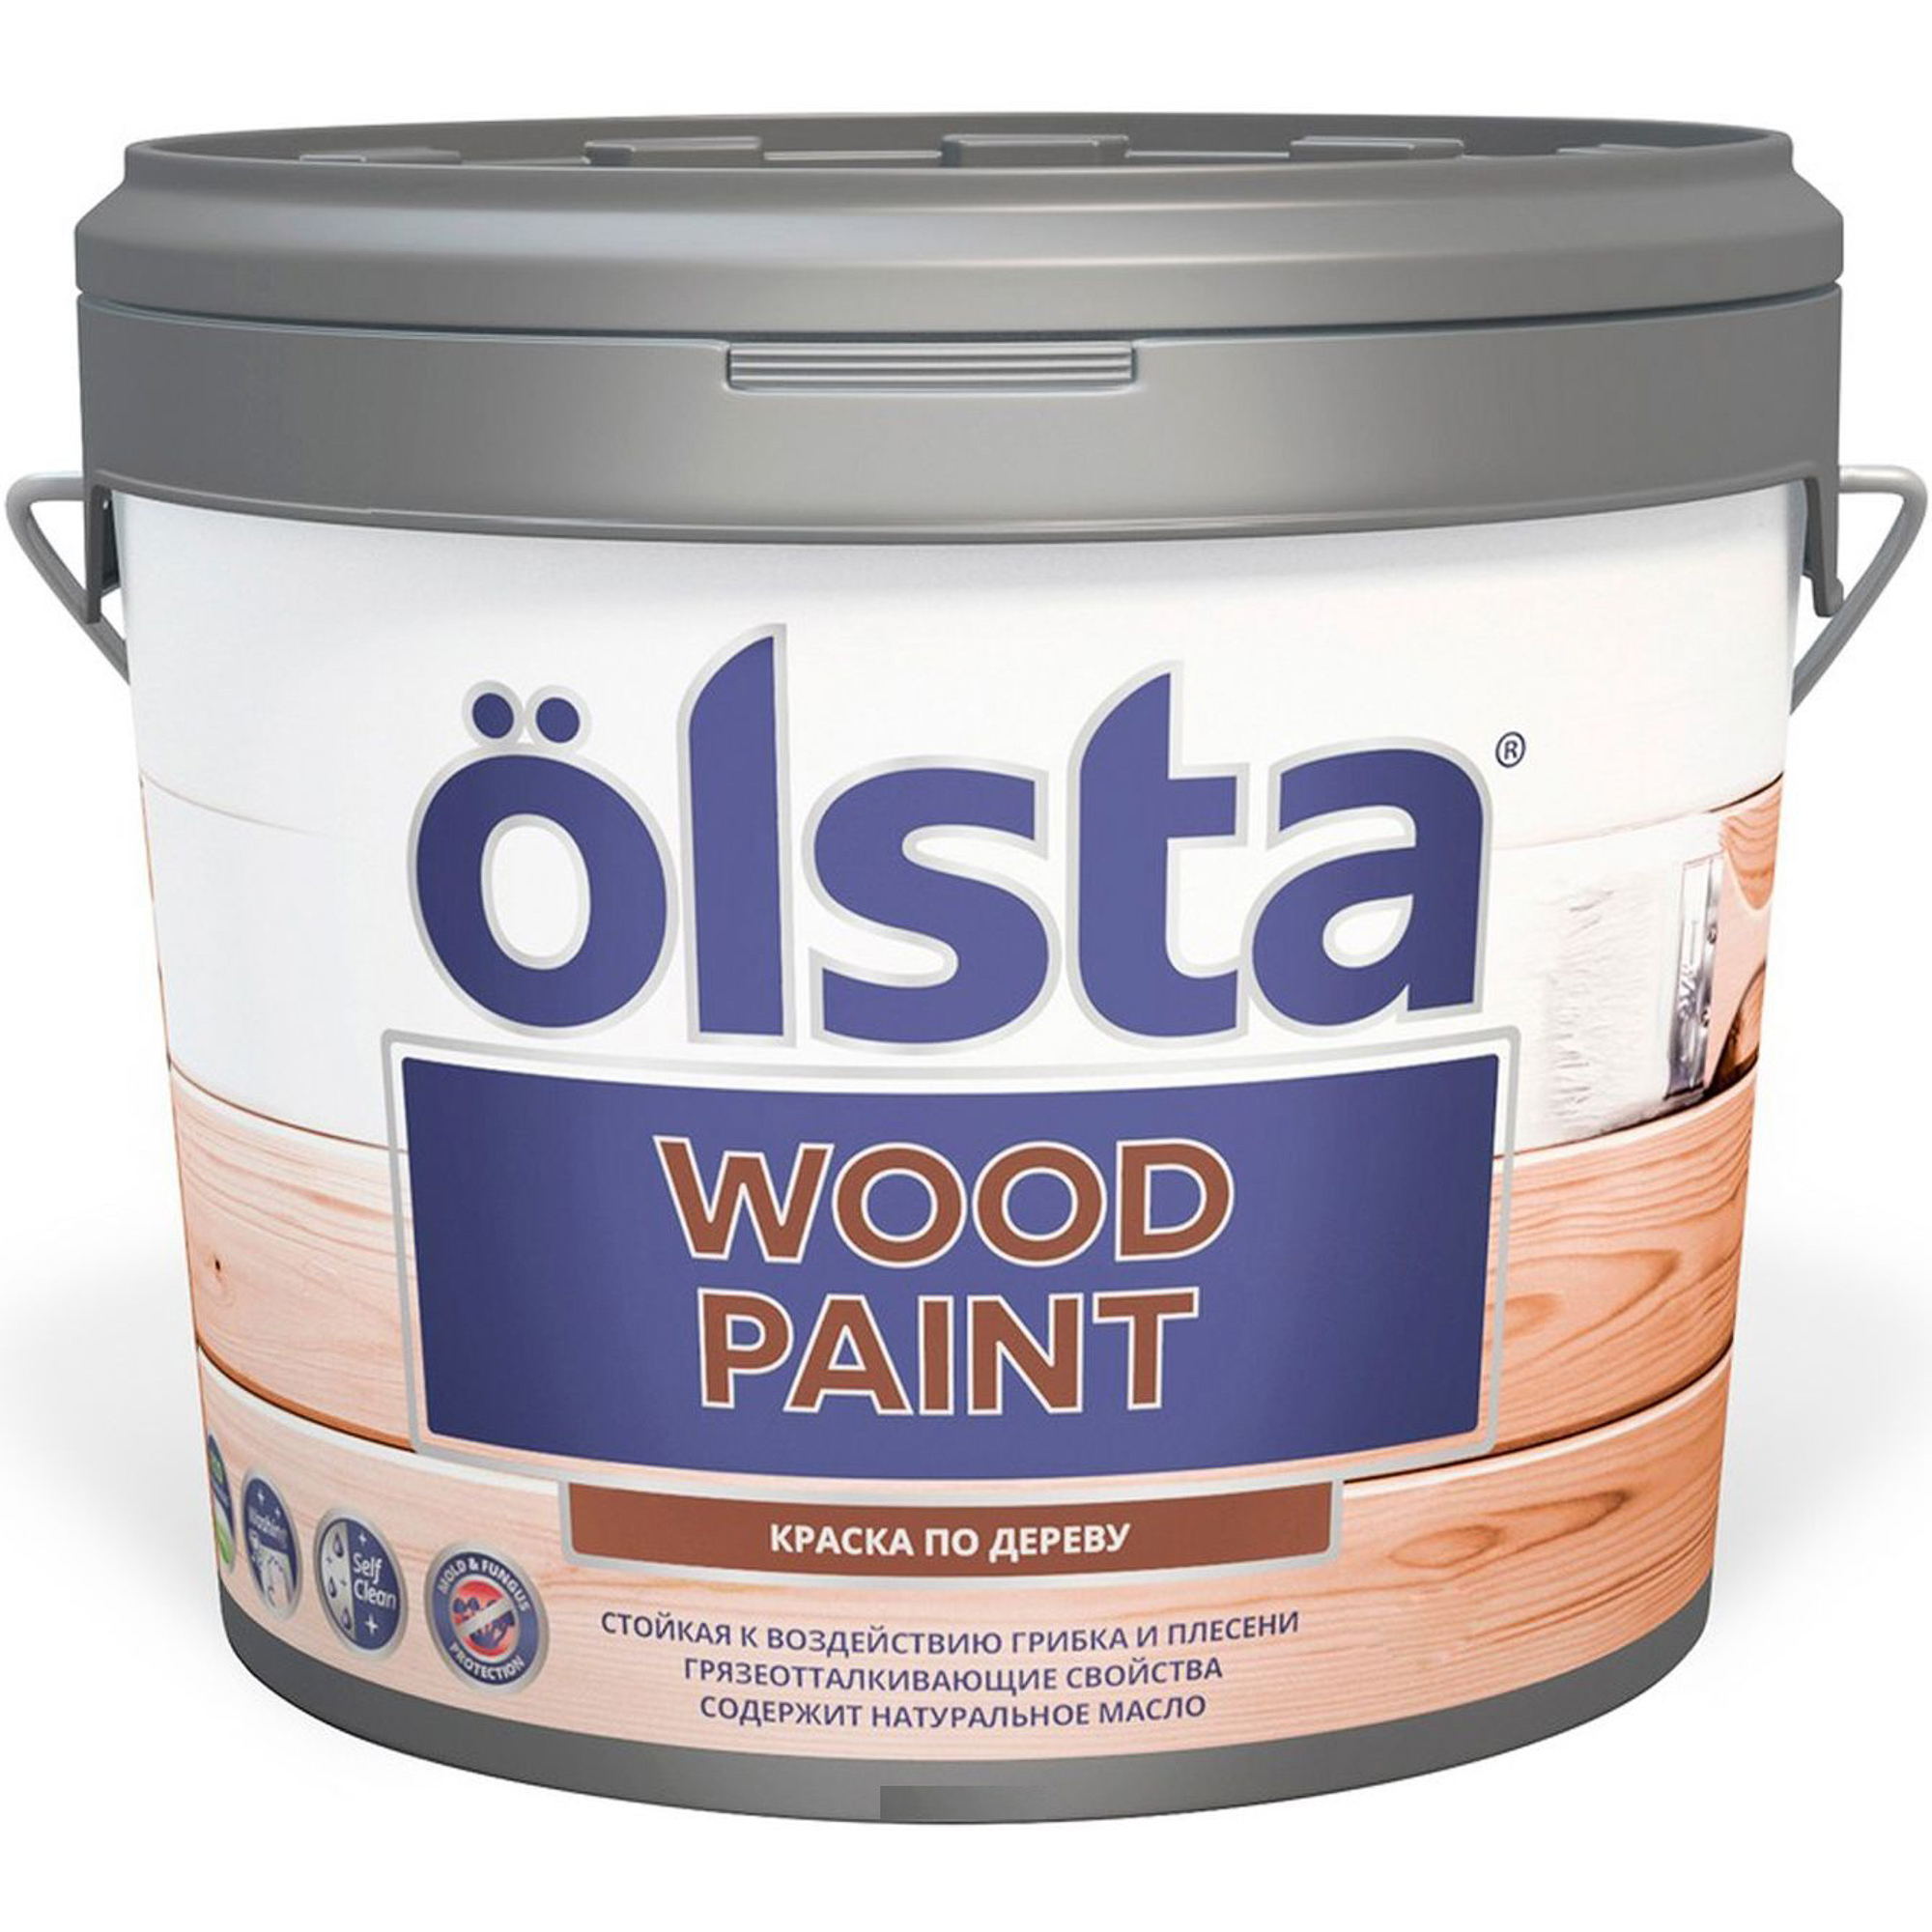 Краска Olsta wood paint для дерева a 2.7 л краска интерьерная влагостойкая акриловая май матовая 6кг